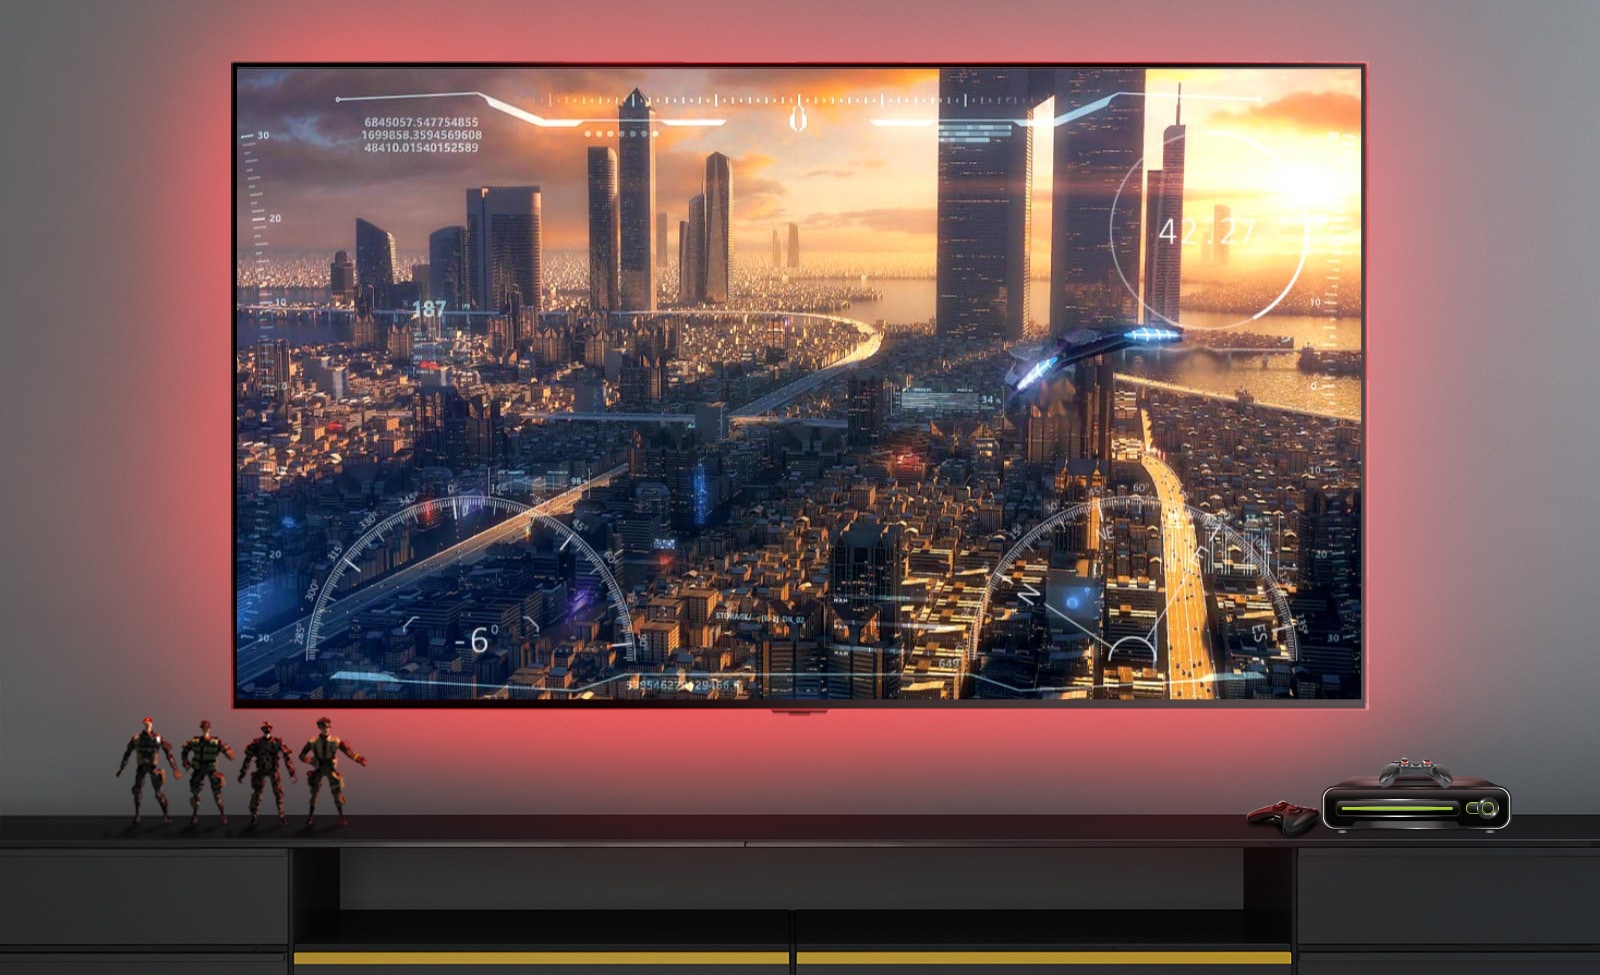 Una escena de un videojuego que muestra una nave espacial sobrevolando una ciudad en una pantalla de televisión (reproducir video).